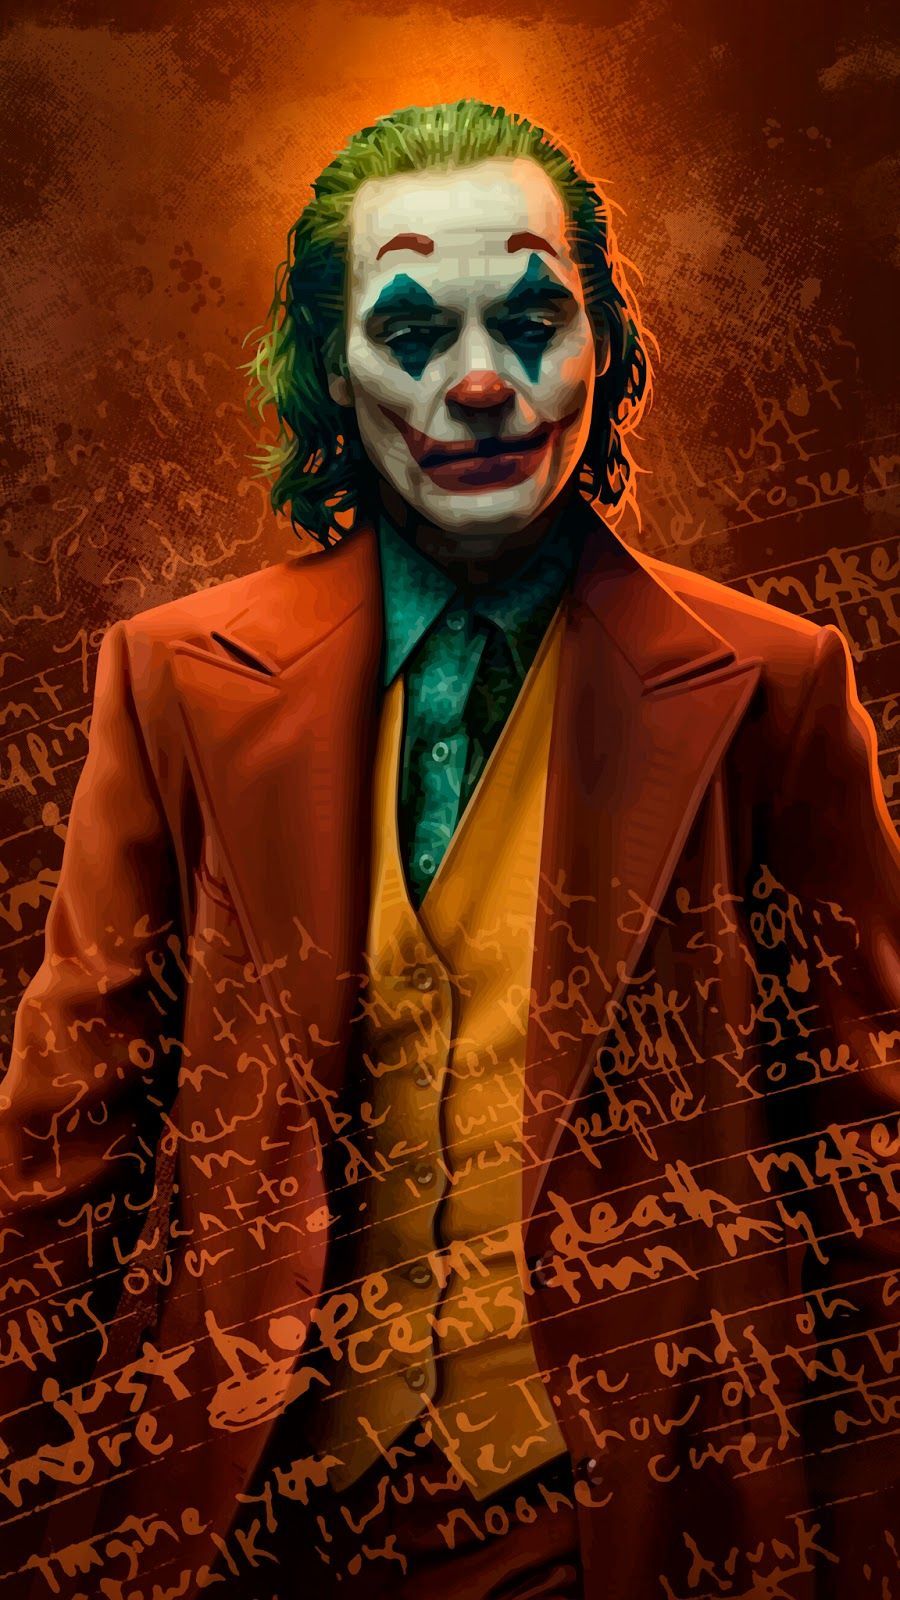 Joker phone wallpaper. HeroScreen. Joker poster, Joker wallpaper, Joker photo